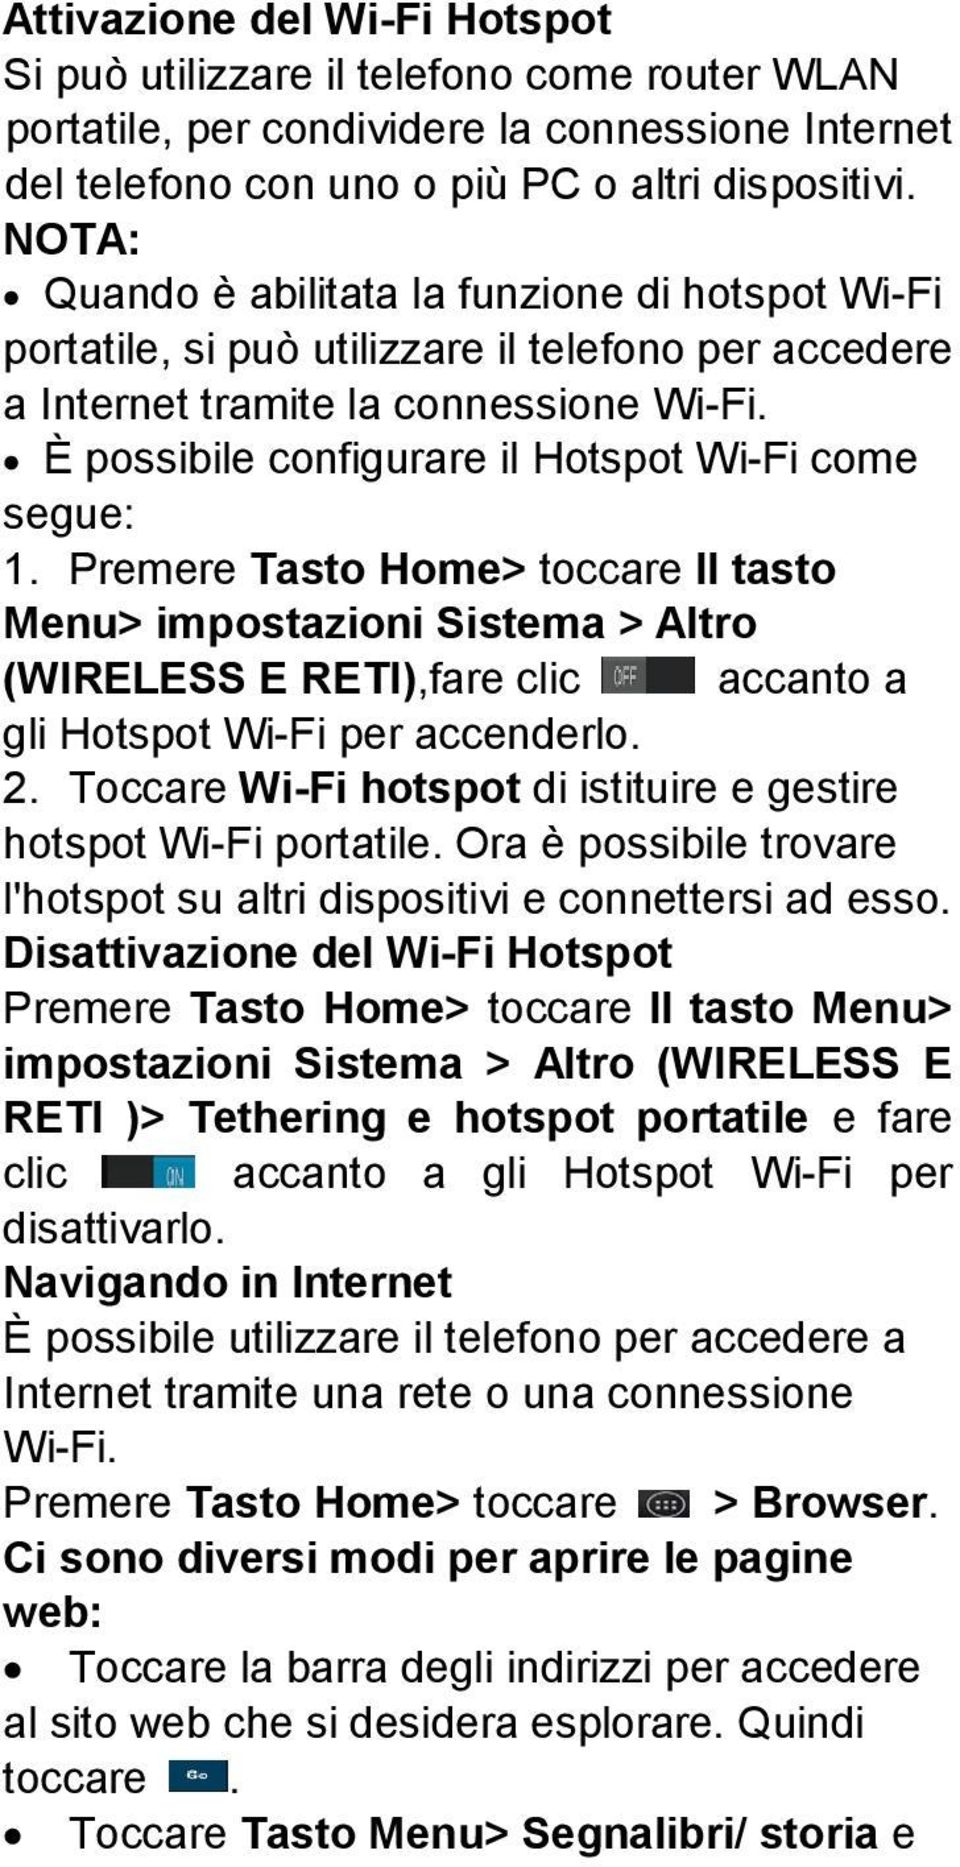 È possibile configurare il Hotspot Wi-Fi come segue: 1. Premere Tasto Home> toccare Il tasto Menu> impostazioni Sistema > Altro (WIRELESS E RETI),fare clic accanto a gli Hotspot Wi-Fi per accenderlo.